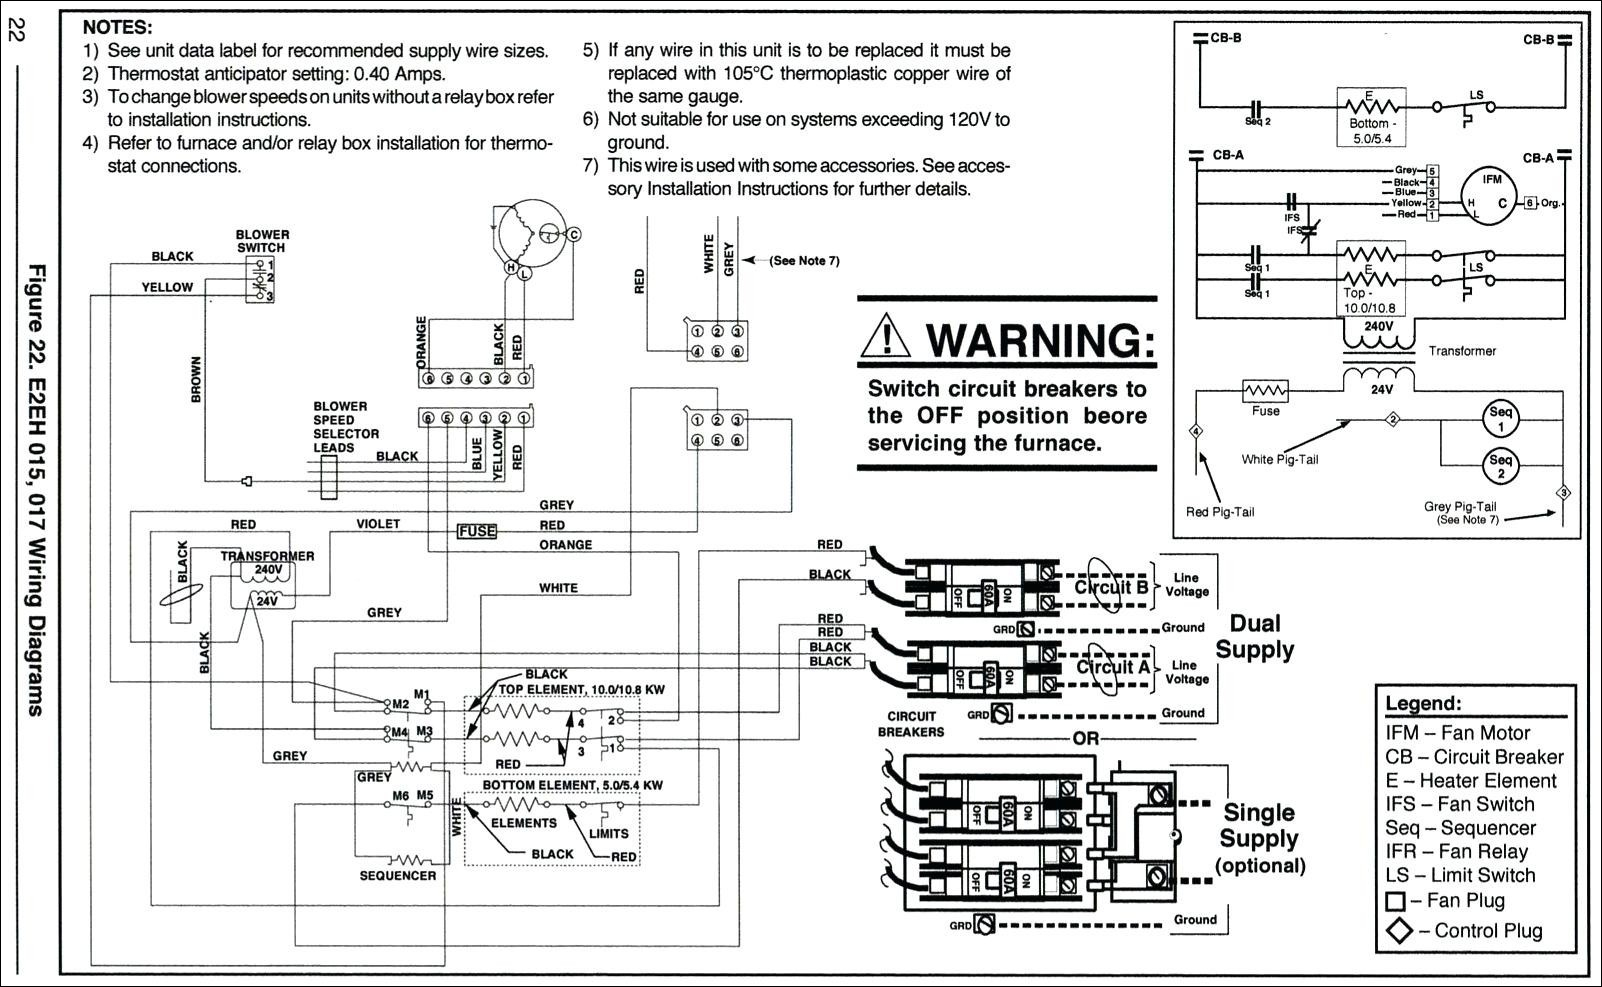 Goodman Electric Furnace Wiring Diagram - Panoramabypatysesma - Electric Furnace Wiring Diagram Sequencer